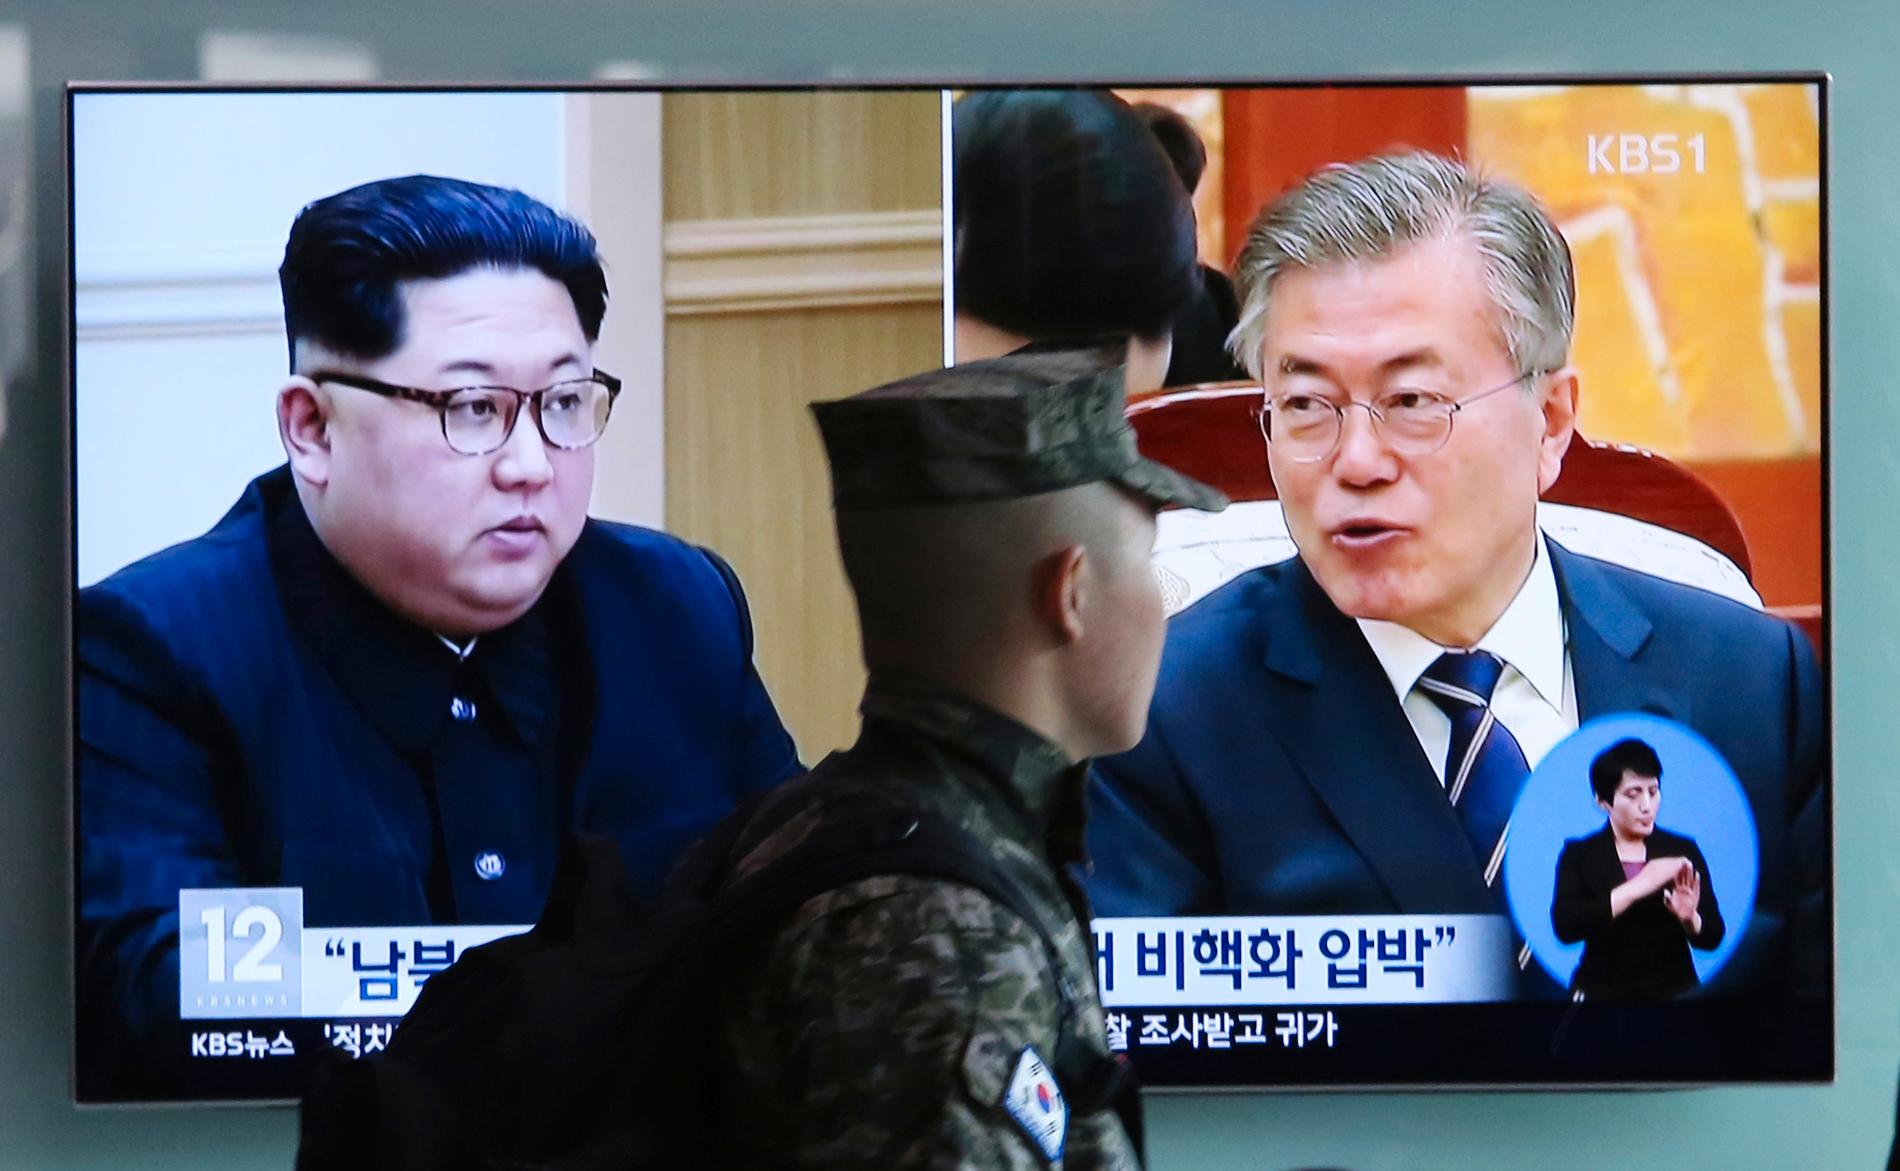 En sydkoreansk soldat passerar en tv-sändning som monterat ihop två bilder på Nordkoreas ledare Kim Jong-Un (till vänster) och Sydkoreas president Moon Jae-in. På fredag blir mötet mellan de båda ledarna verklighet.